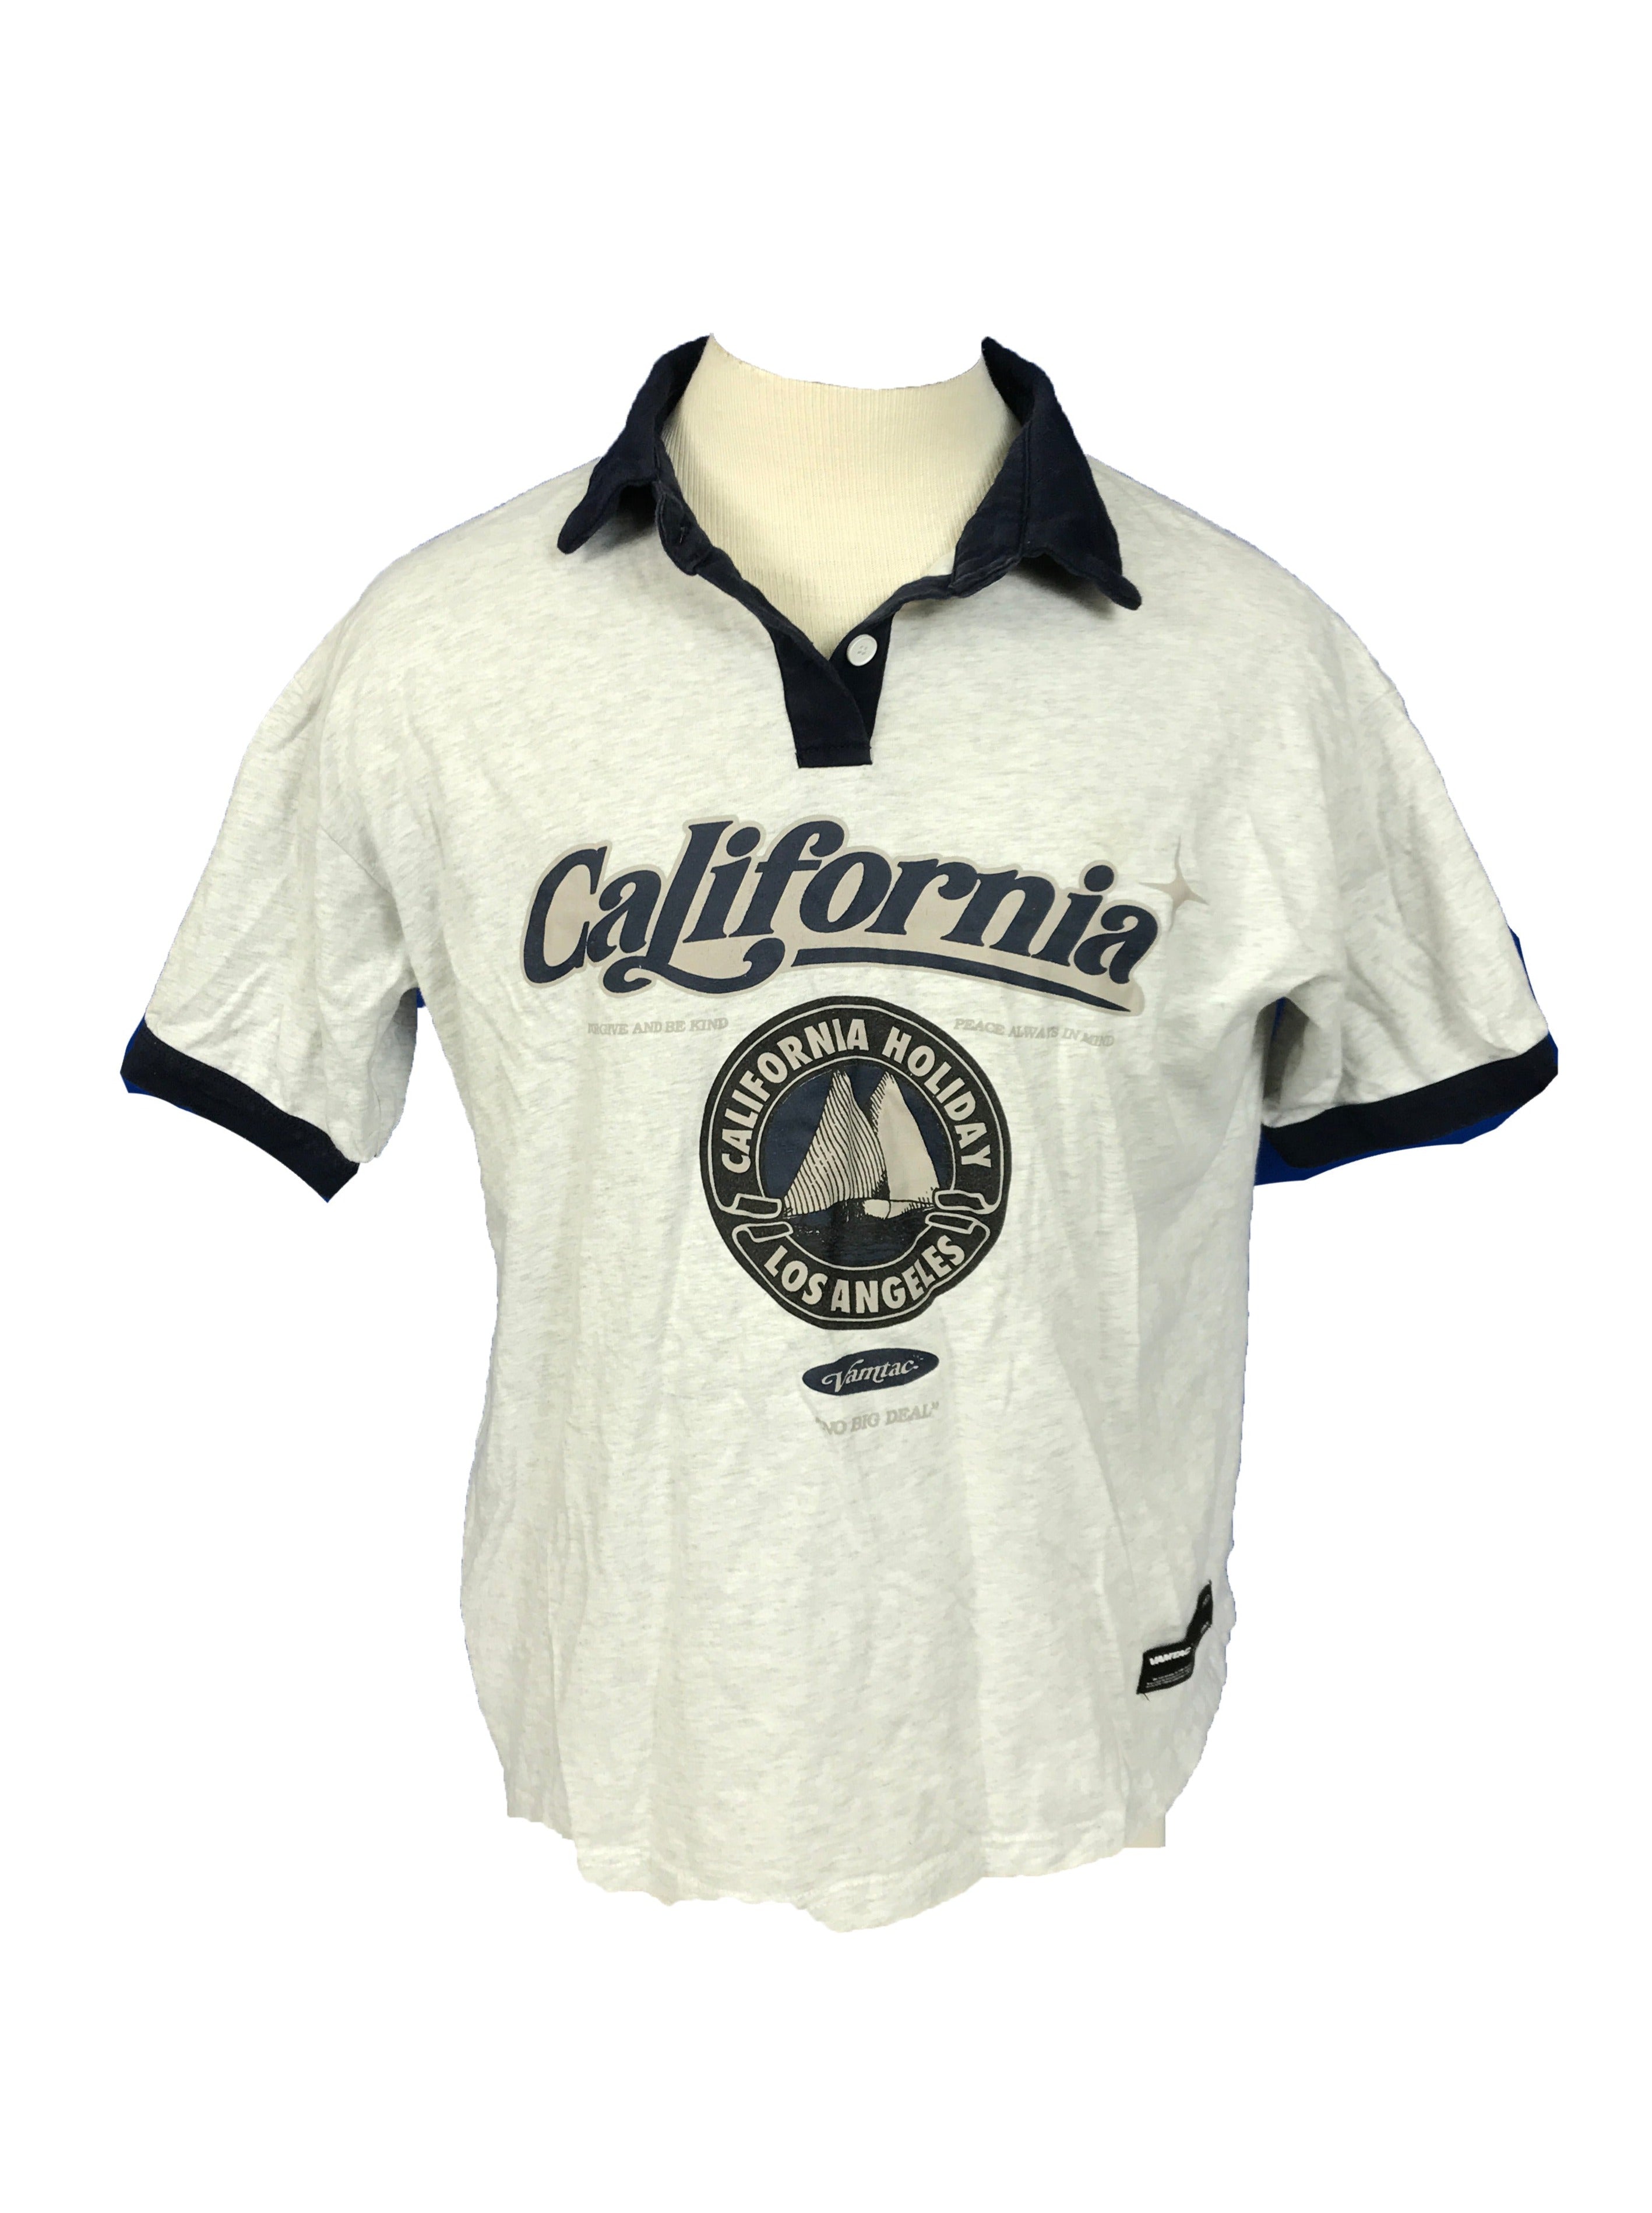 Collared California Graphic Design Shirt Men's M